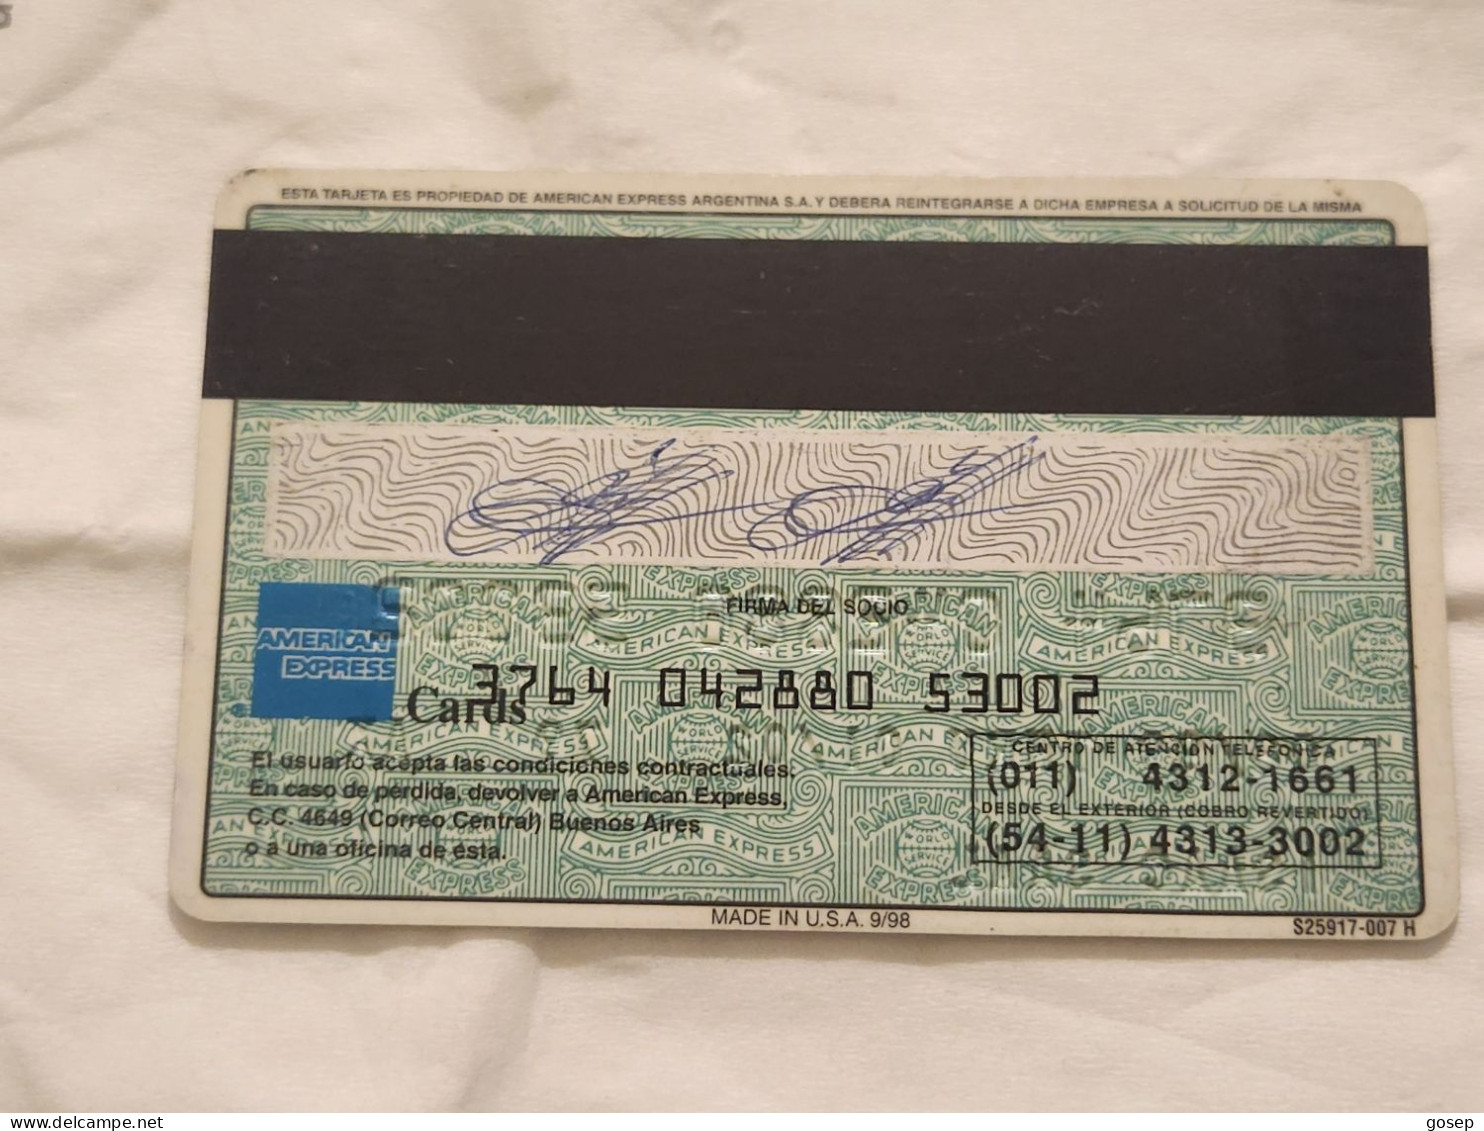 ISRAEL-American Express-(3764-042880-53002)-(8/99)-used Card - Carte Di Credito (scadenza Min. 10 Anni)